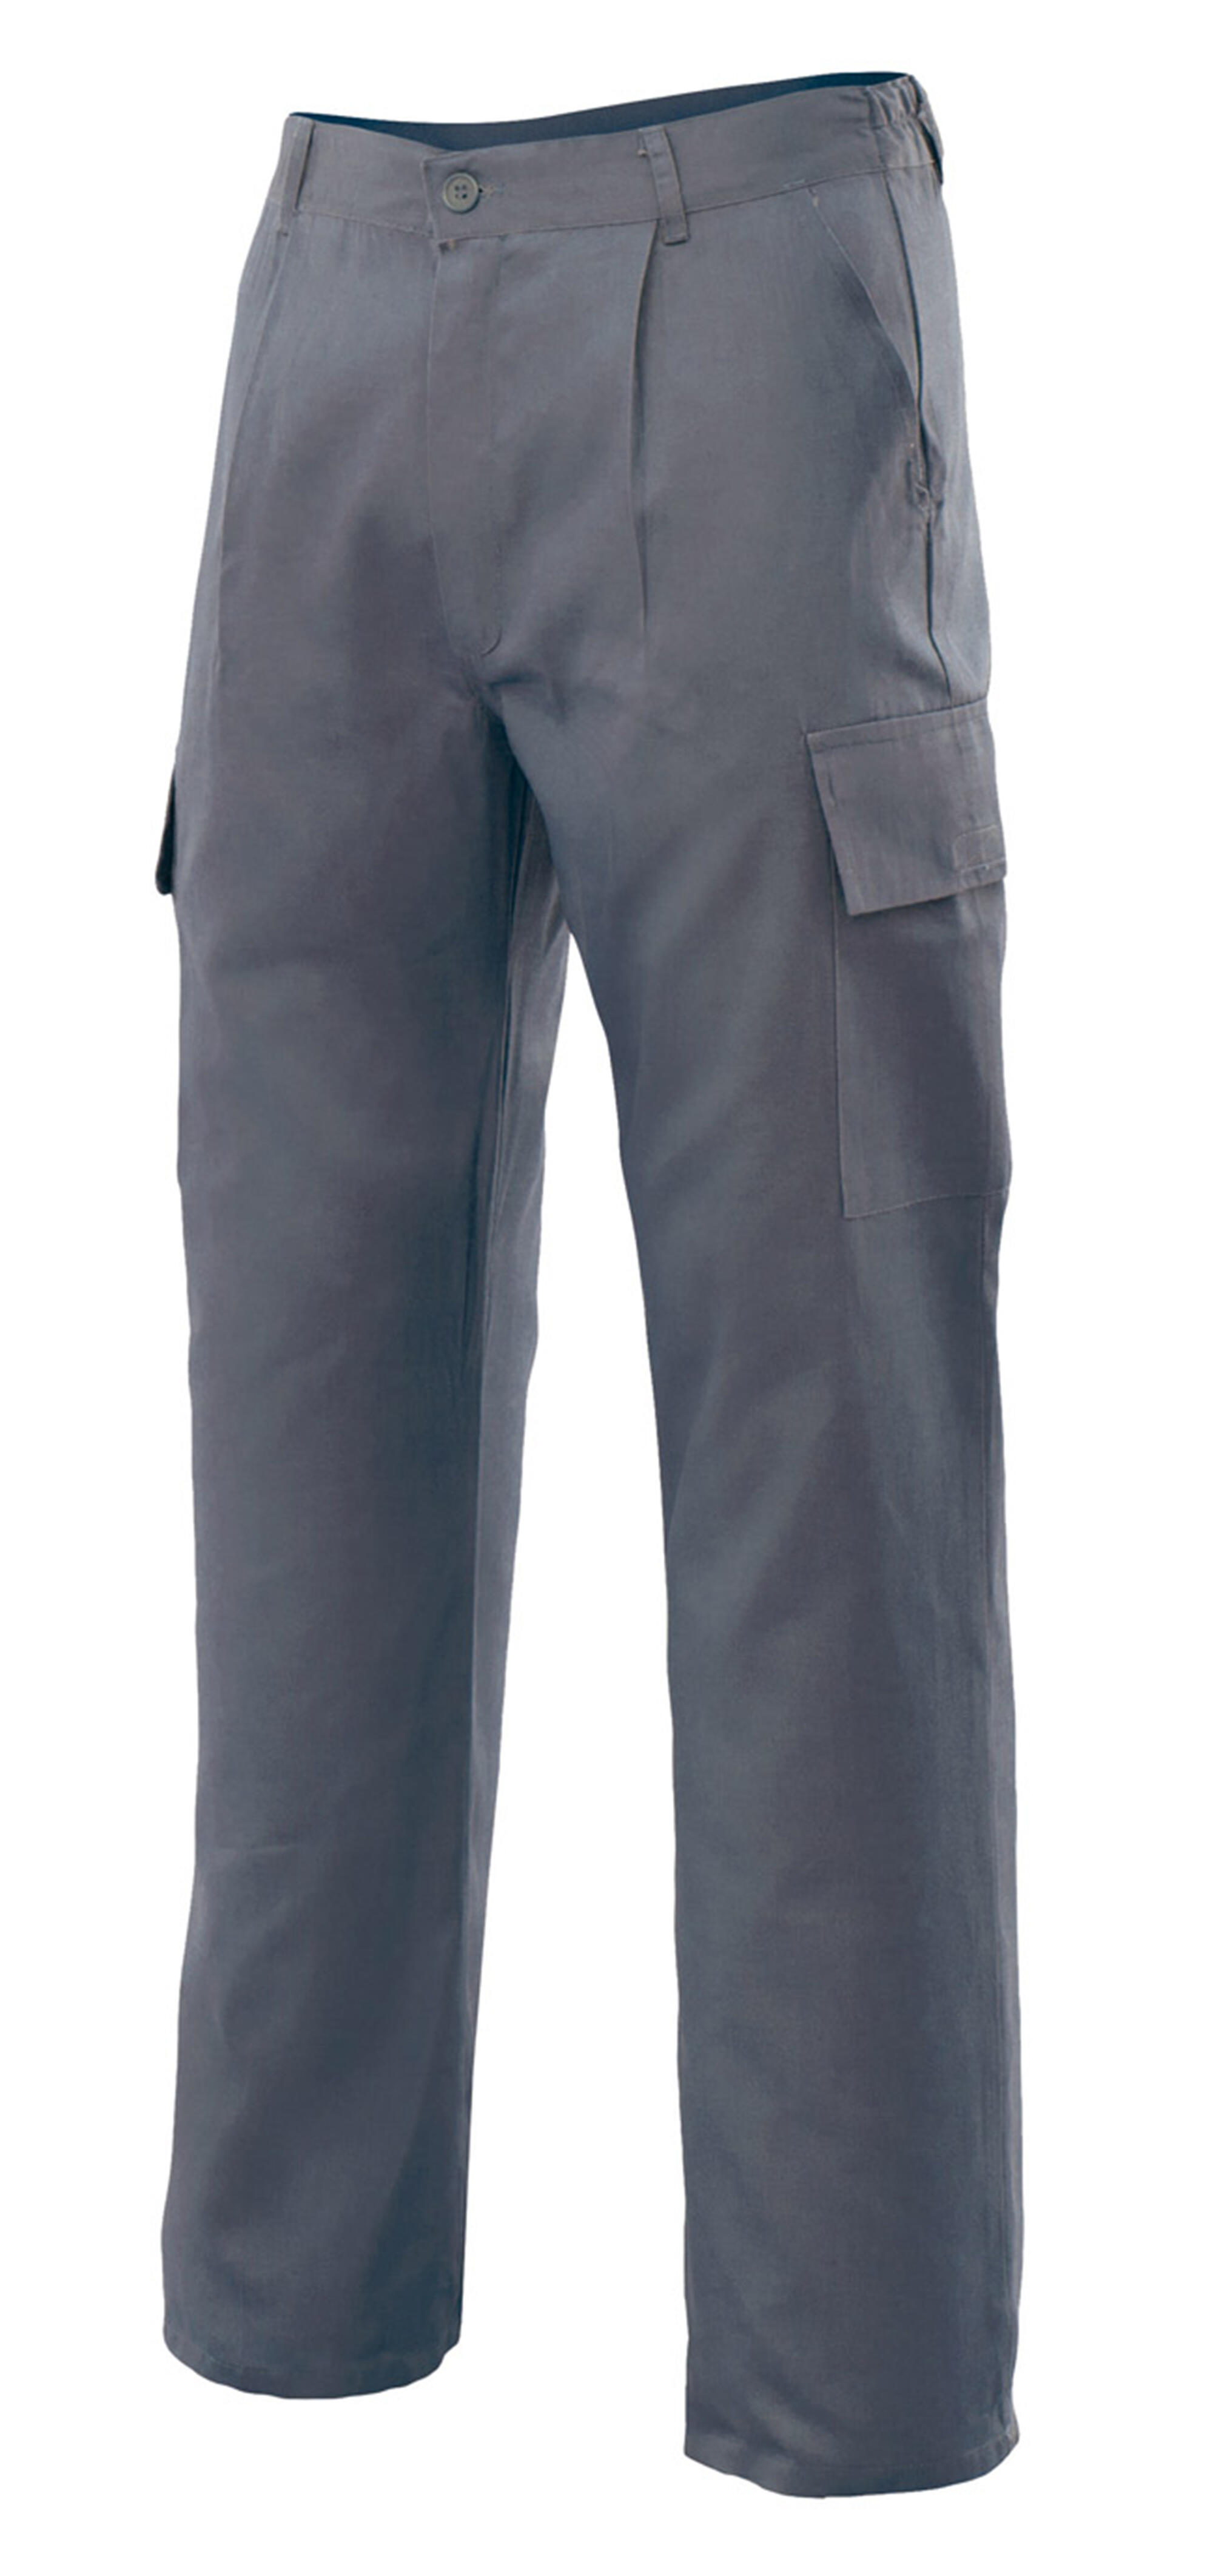 Pantalon de trabajo vertice multibolsillo gris t52